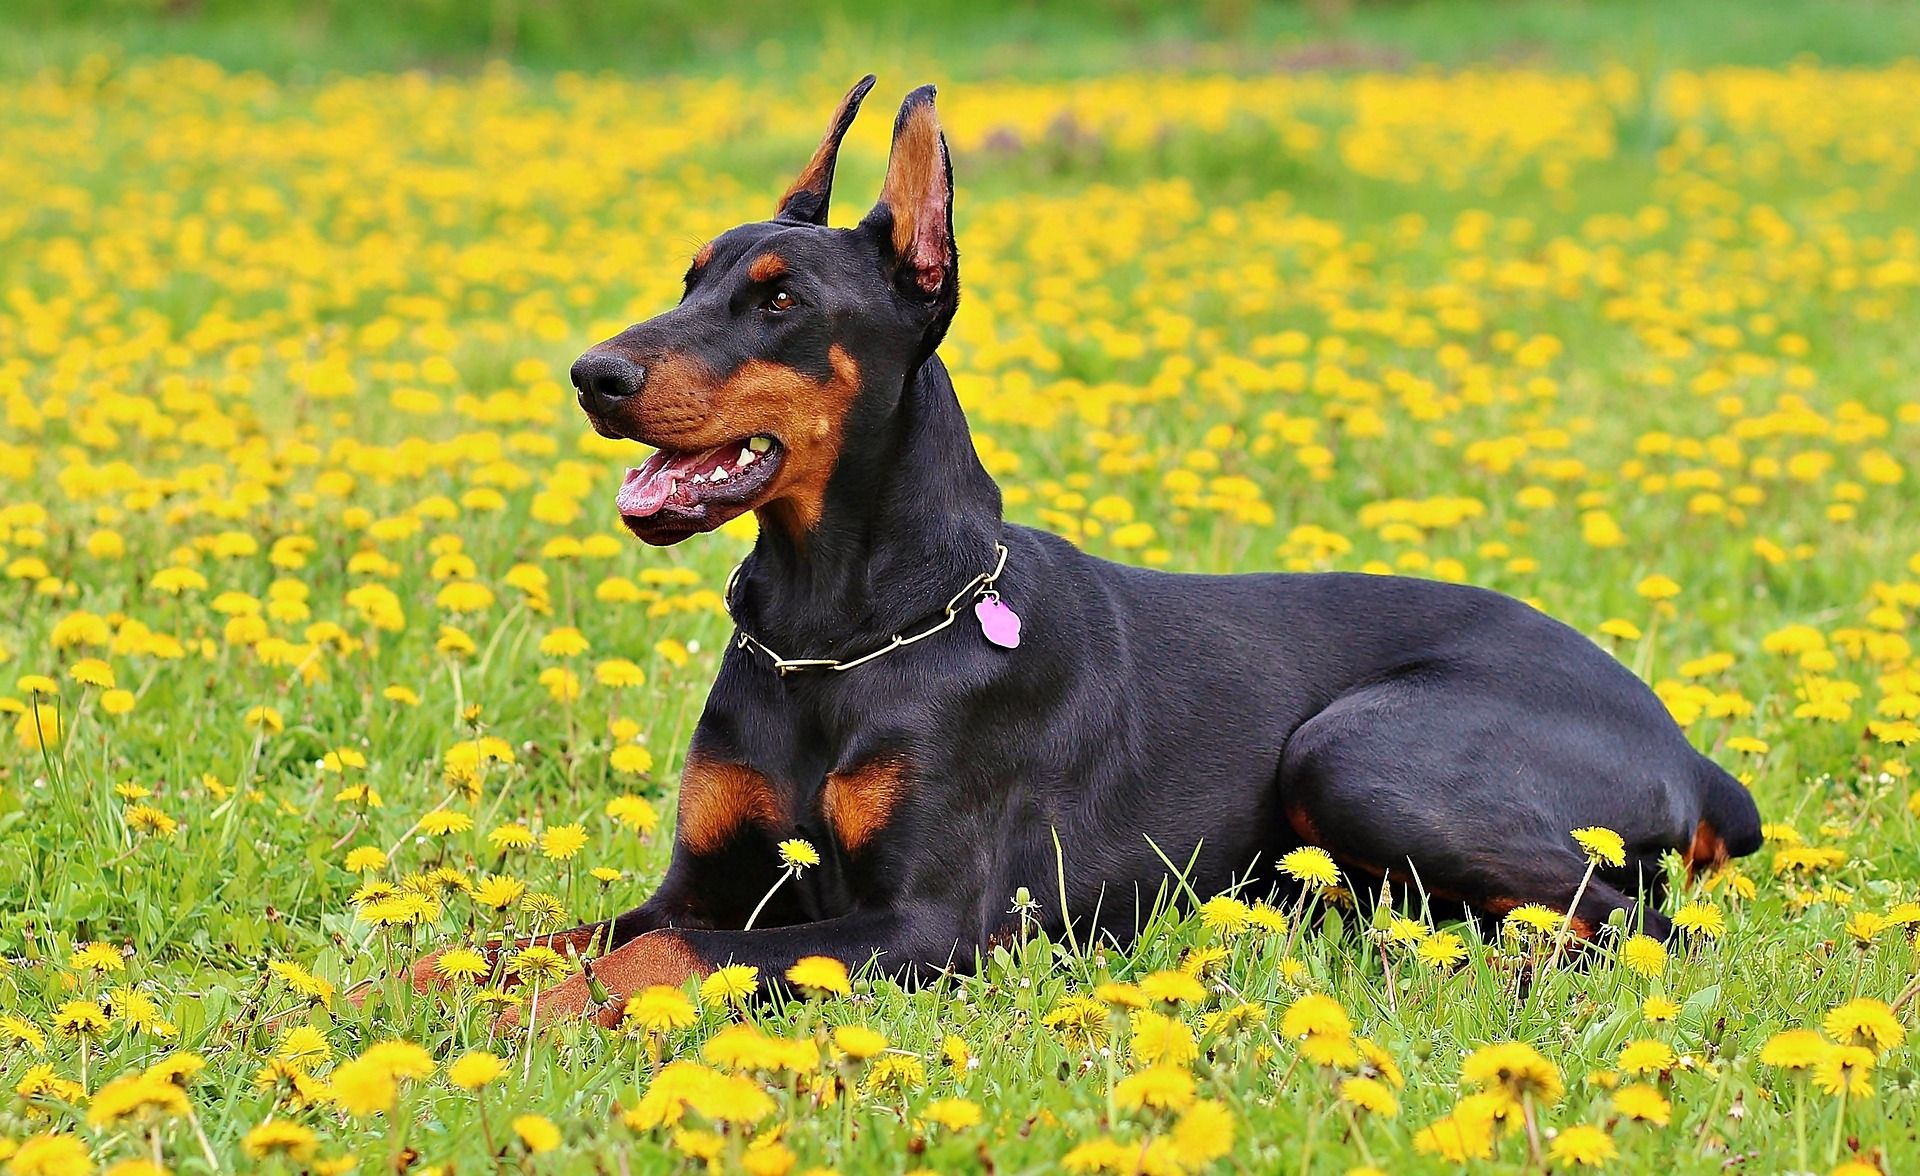 El doberman es una de las razas caninas consideradas potencialmente peligrosas (Creative commons)